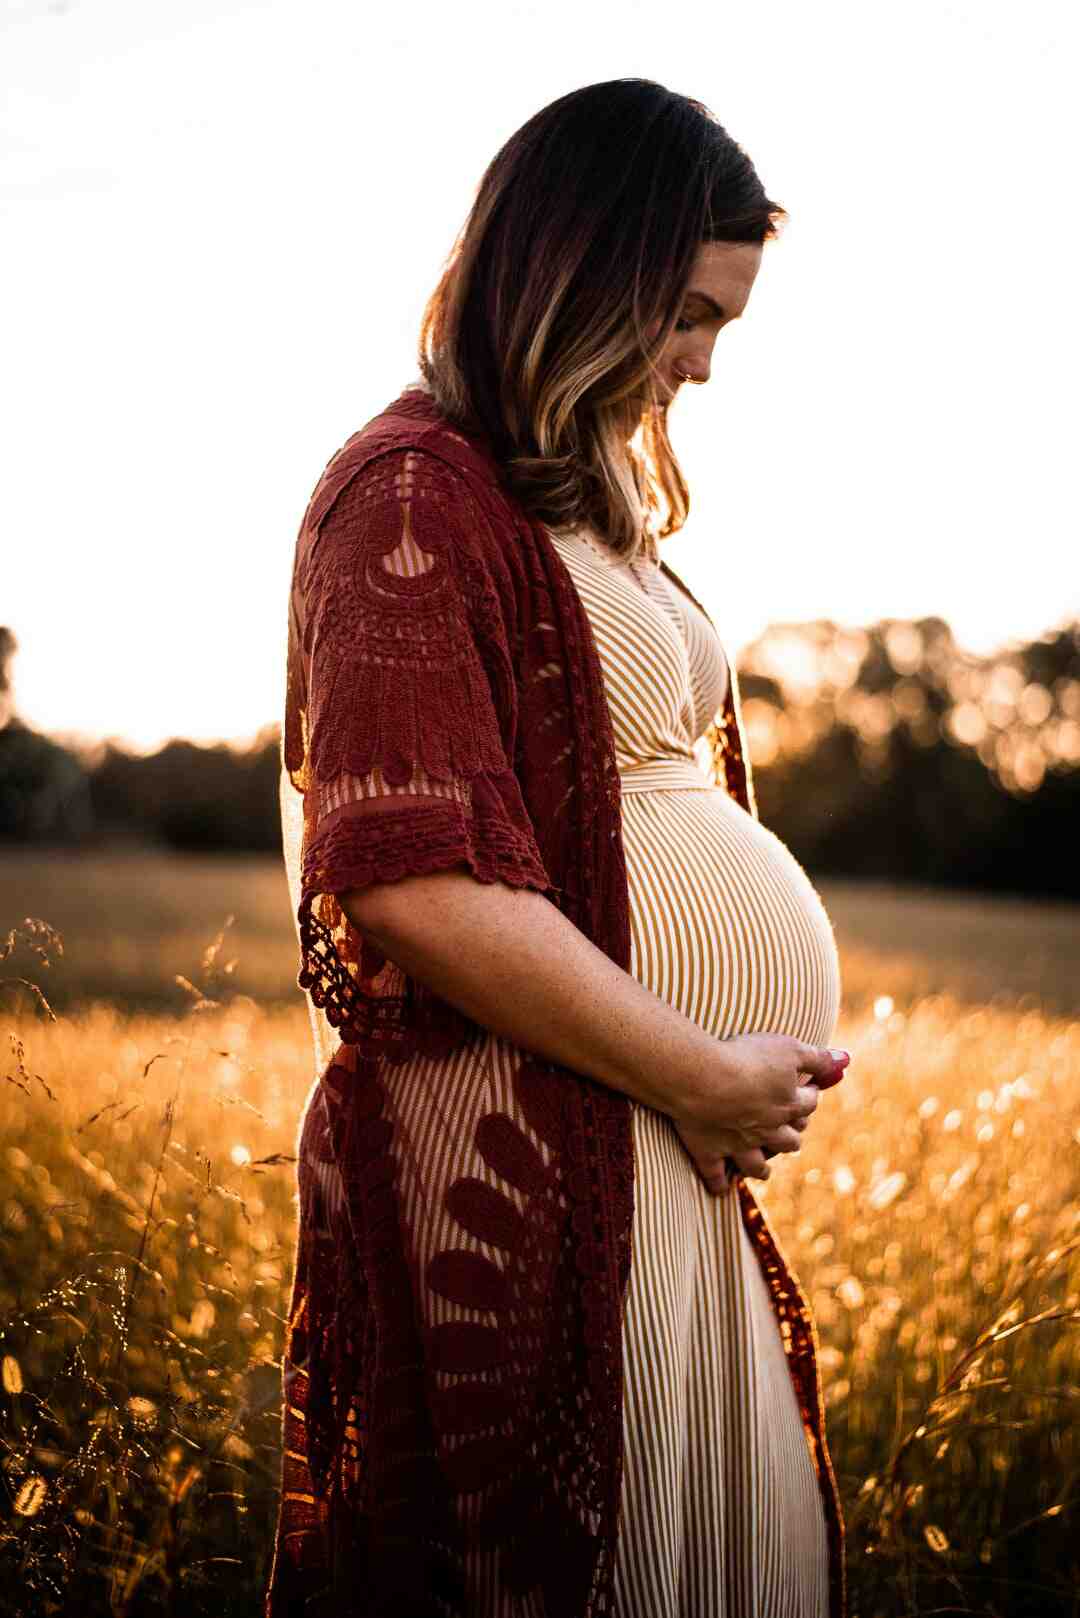 Comment savoir si mon début de grossesse se passe bien ? - astucefree